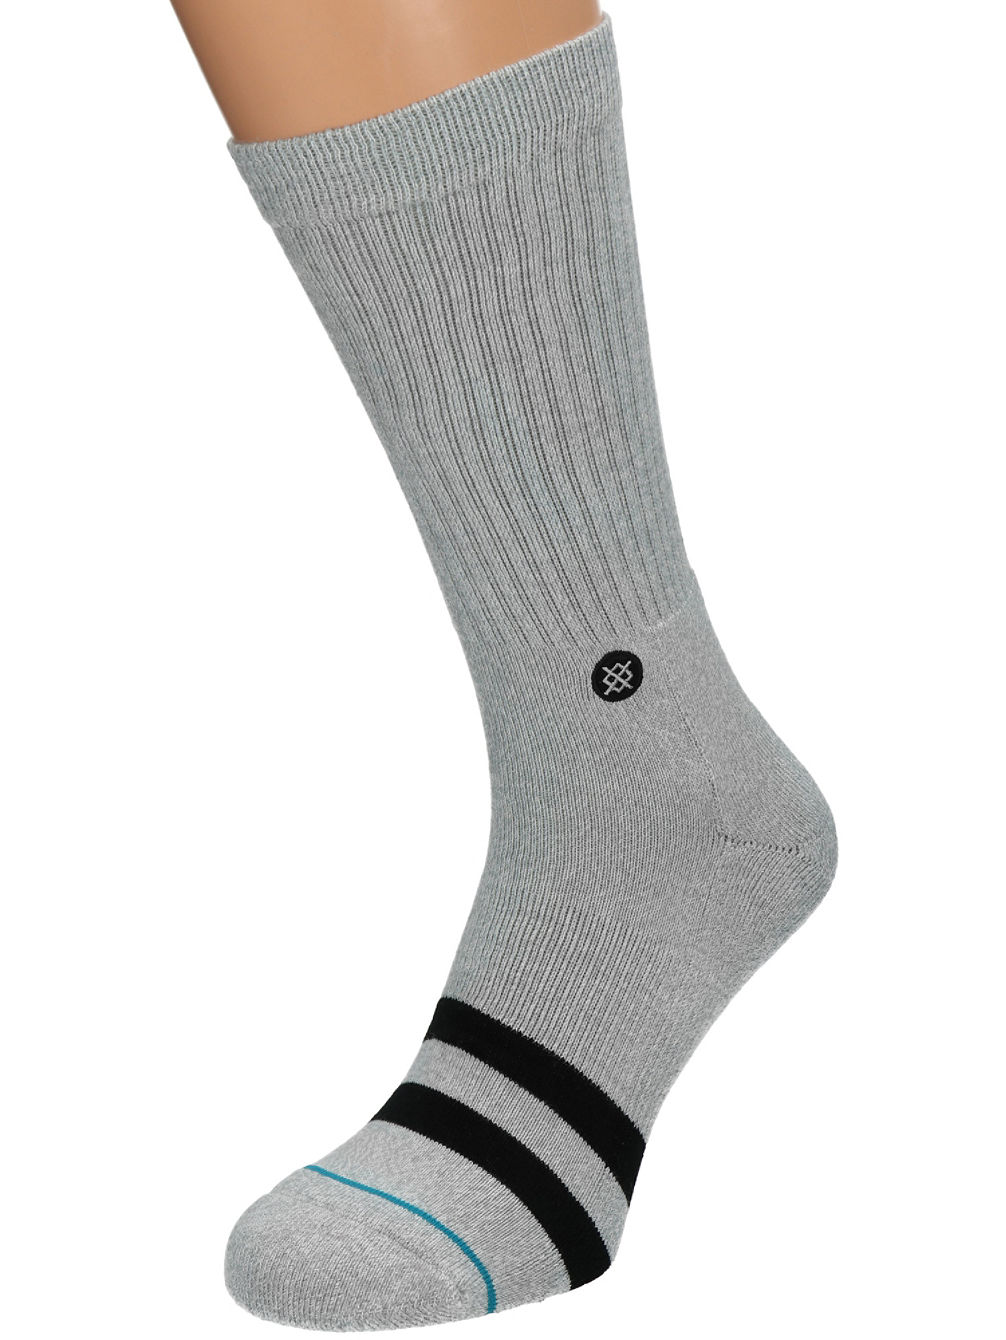 OG Socks